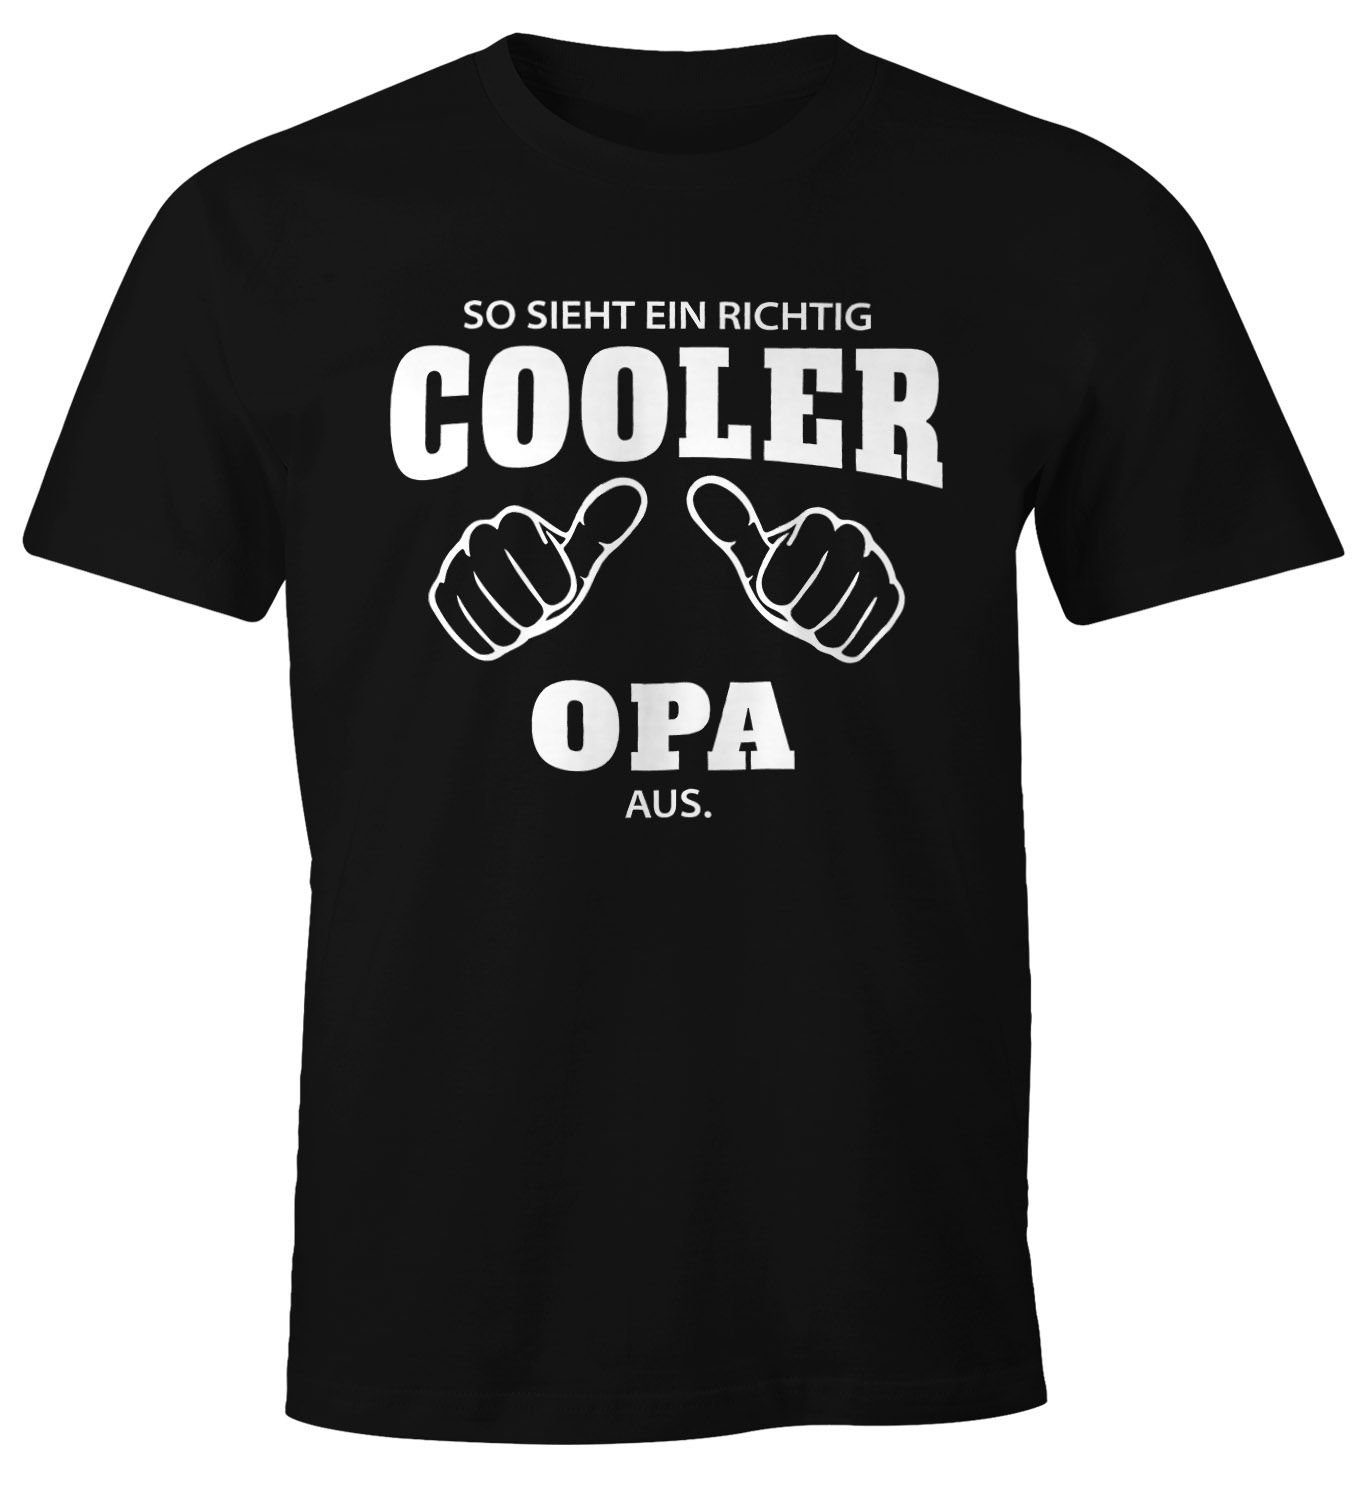 [object Moonworks® schwarz ein aus Fun-Shirt ein Object] MoonWorks richtig So Herren T-Shirt cooler sieht Opa richtig mit Print-Shirt Print